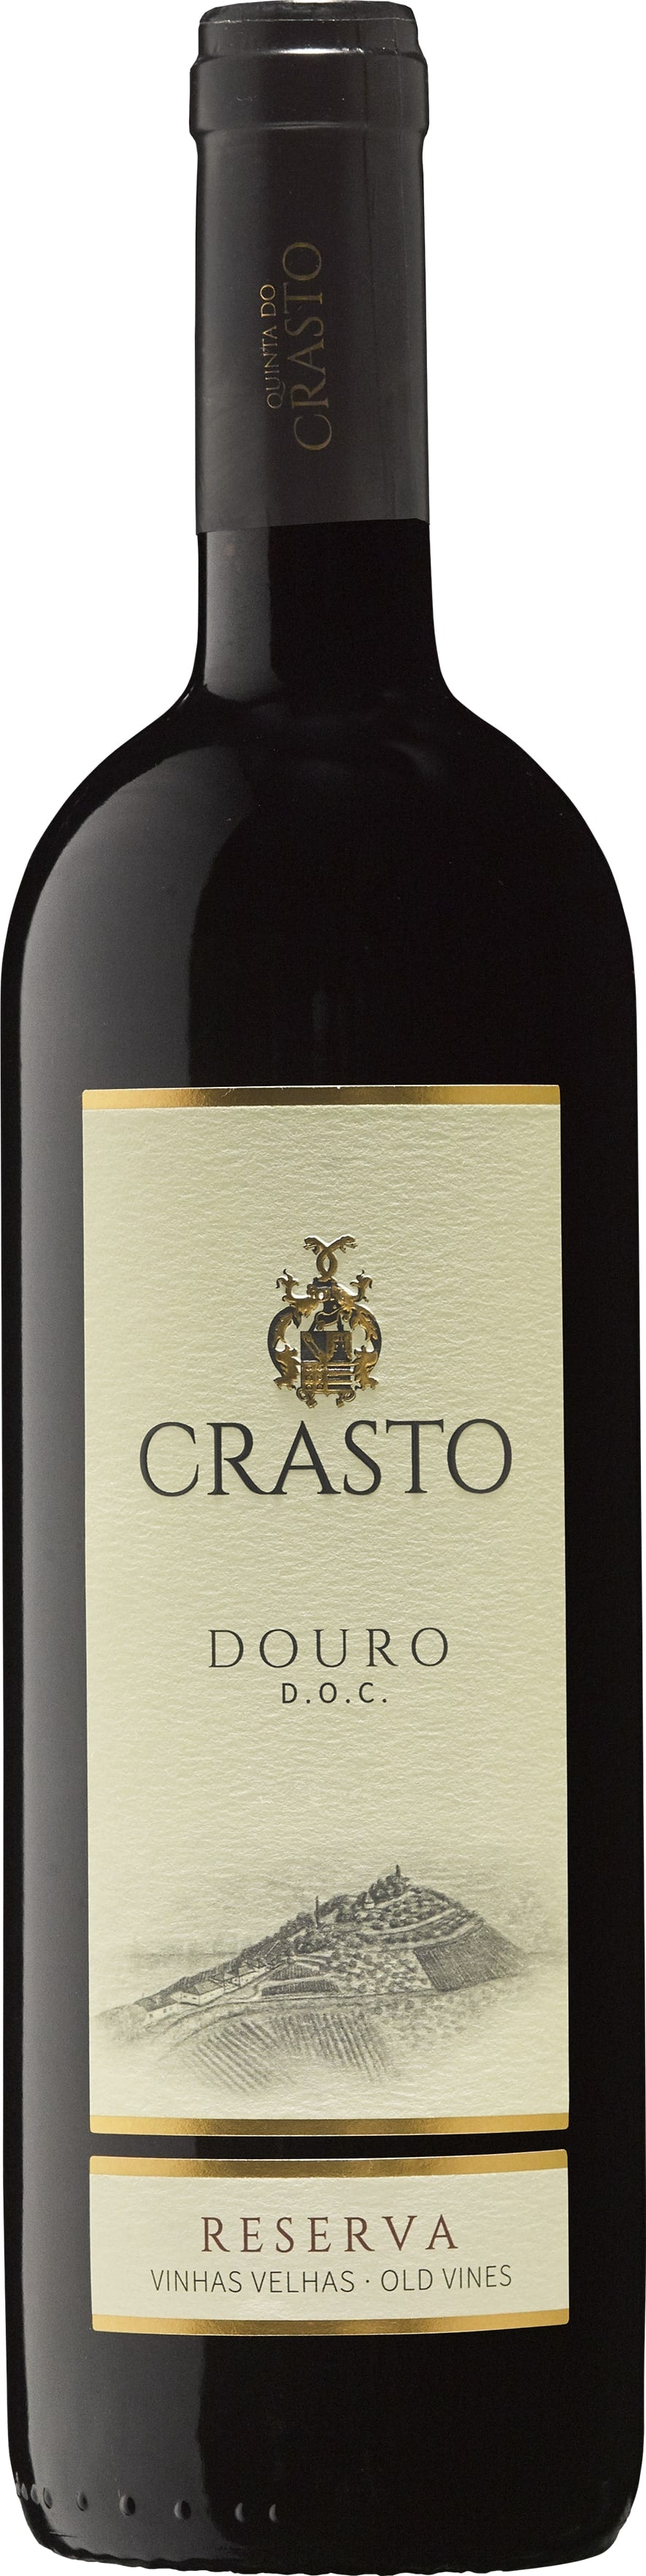 Quinta Do Crasto Douro Old Vines Reserva 2021 75cl - Buy Quinta Do Crasto Wines from GREAT WINES DIRECT wine shop